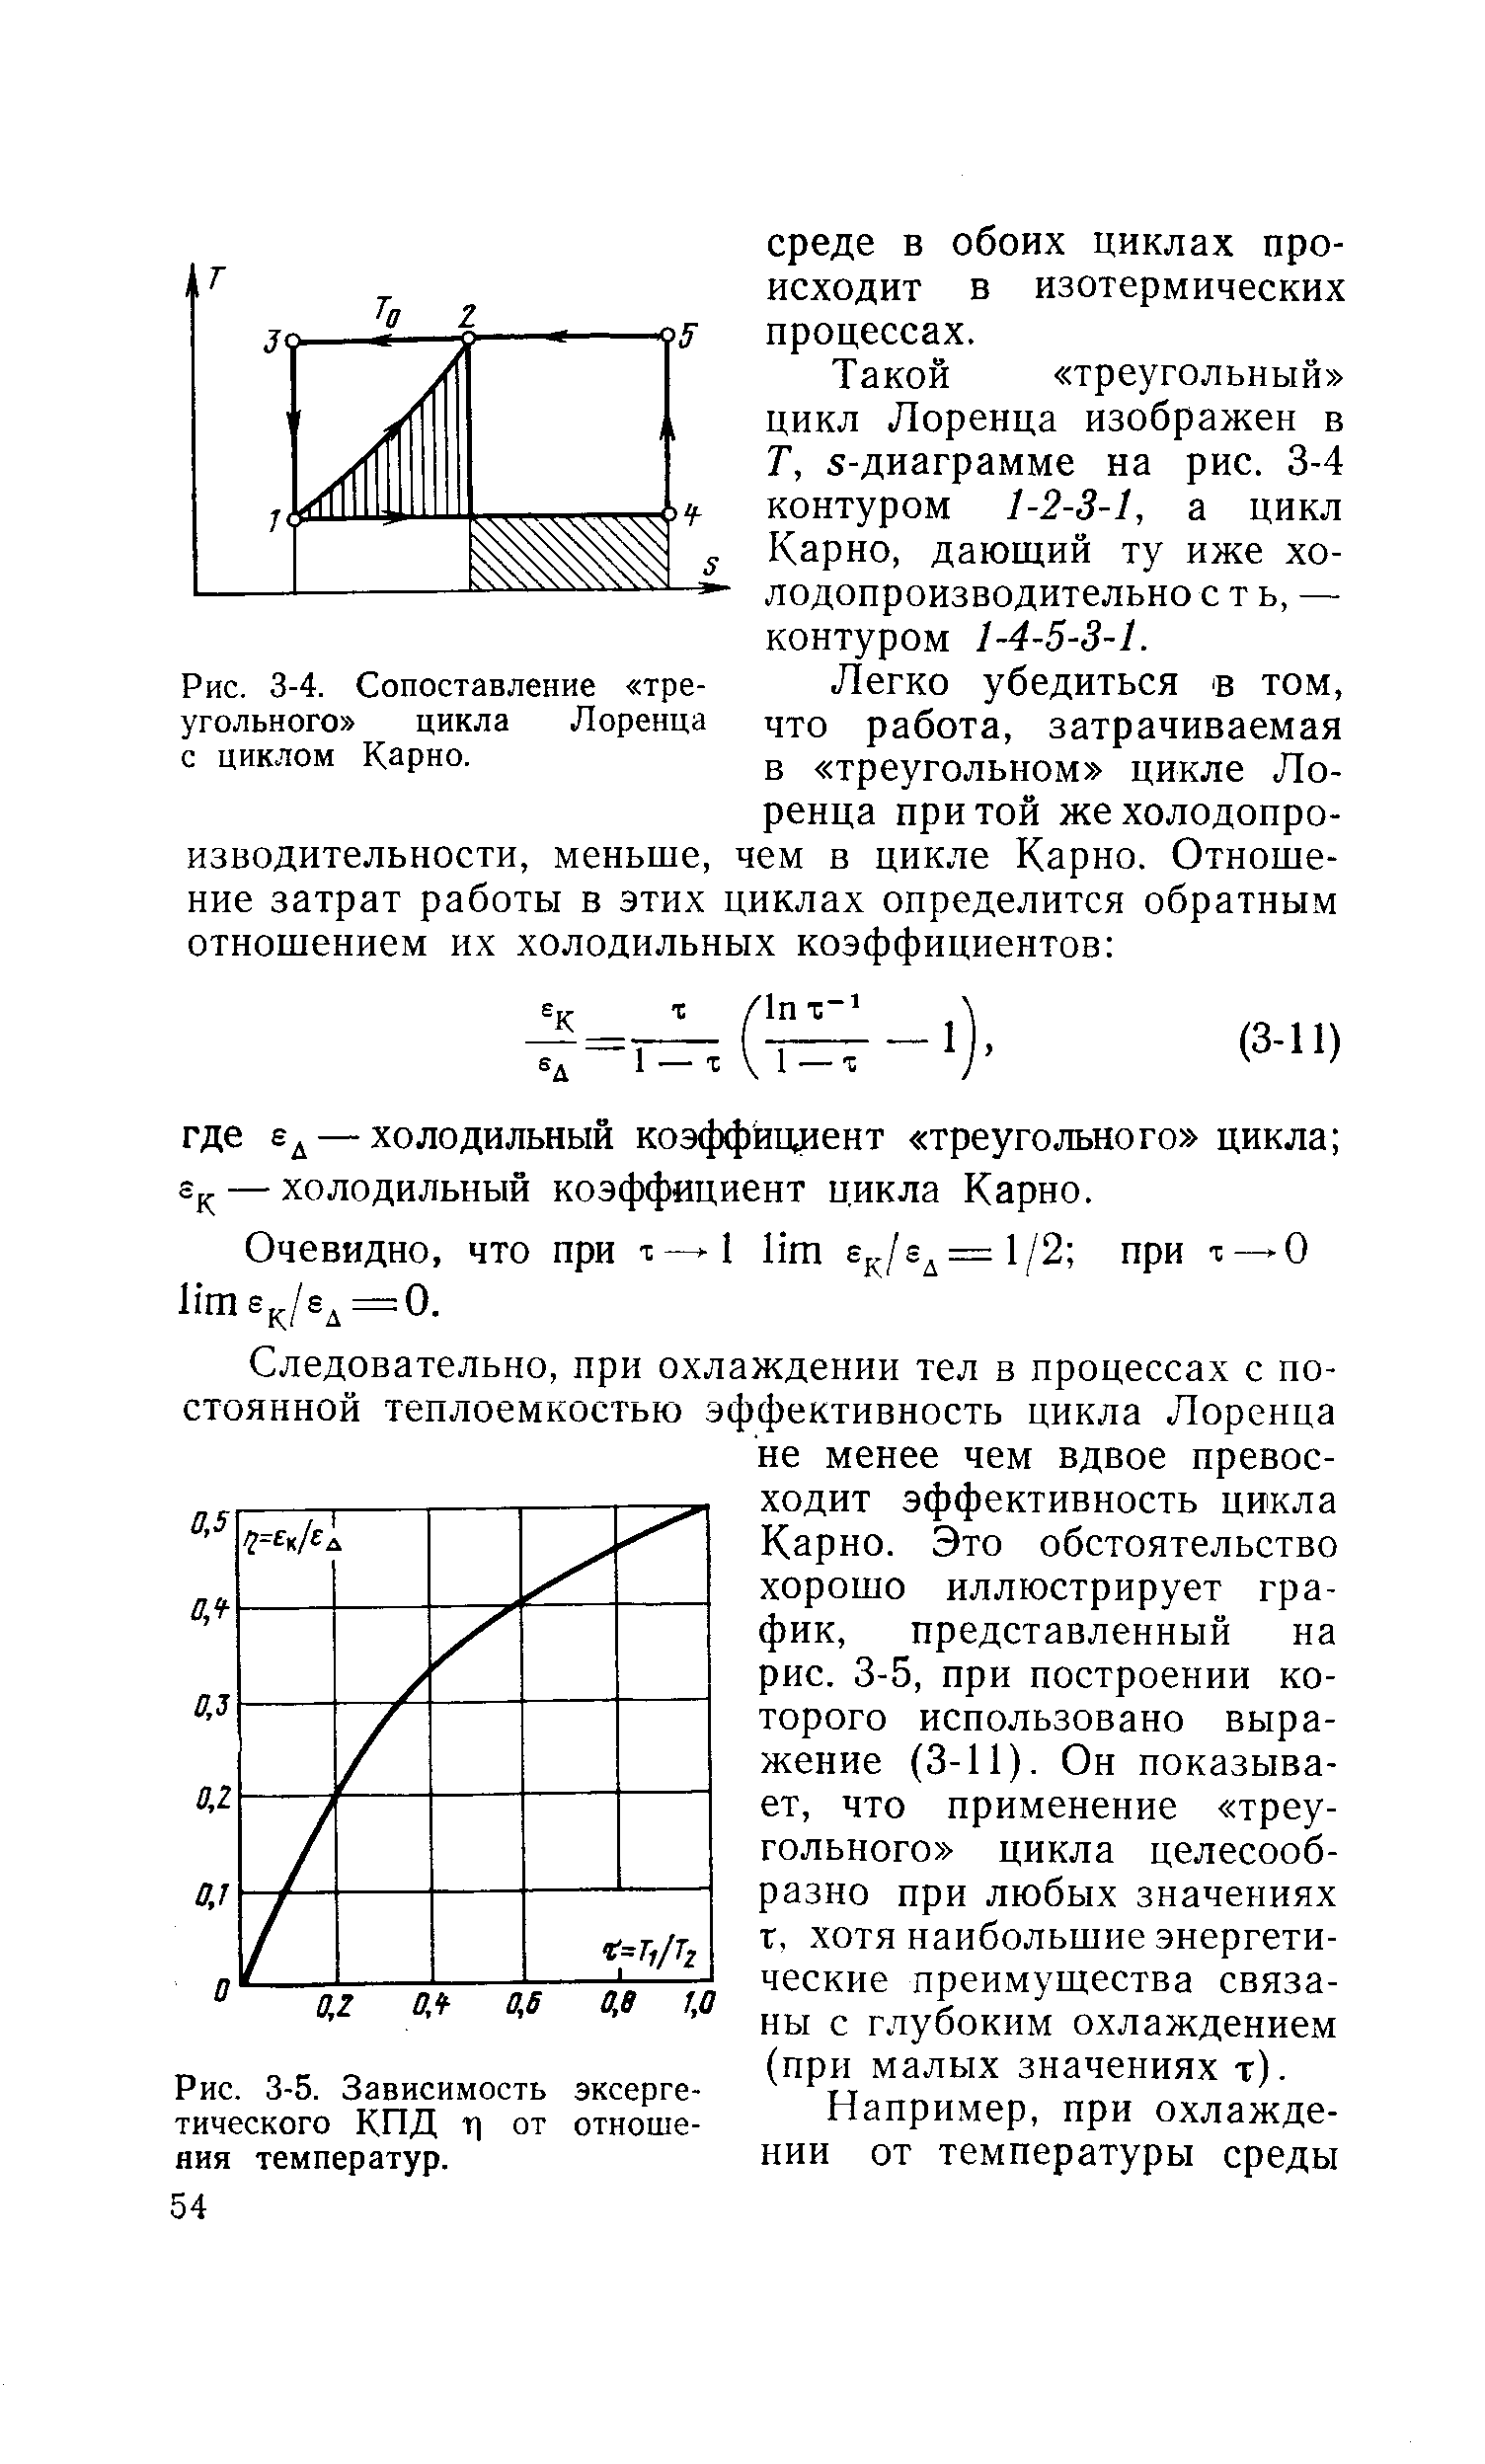 Рис. 3-4. Сопоставление треугольного цикла Лоренца с циклом Карно.
